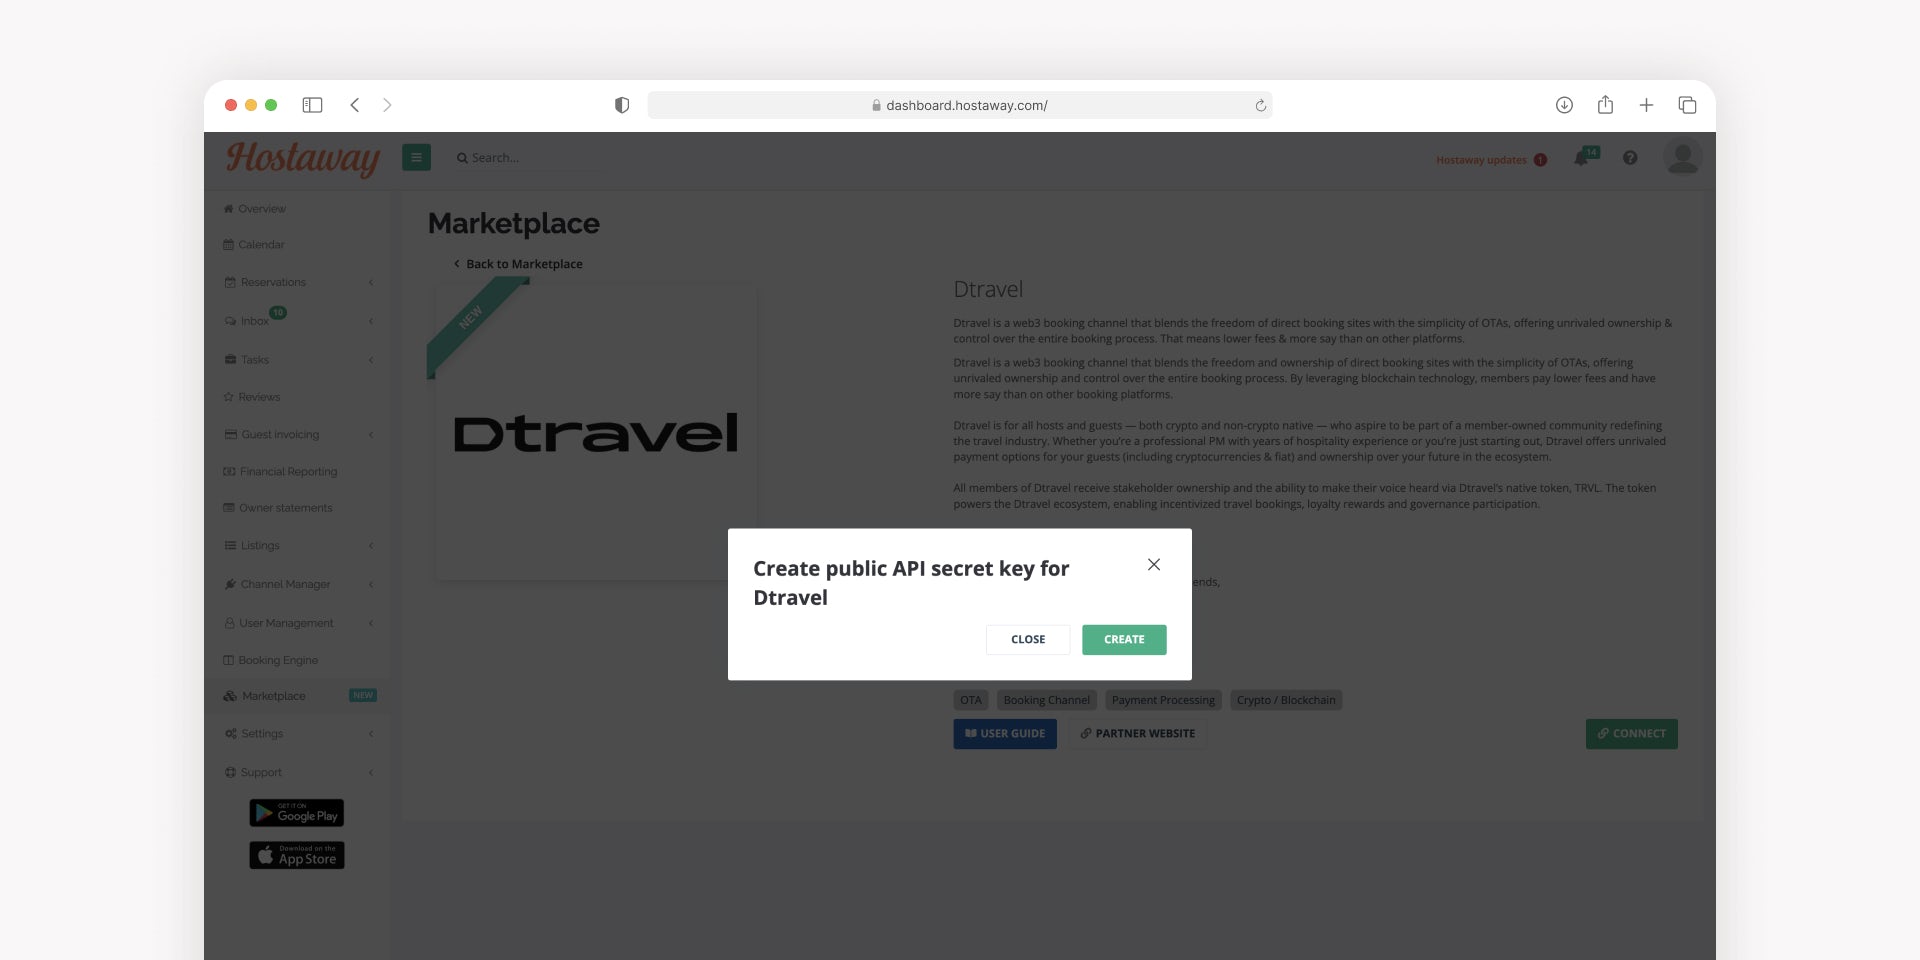 Create public API secret key for Dtravel